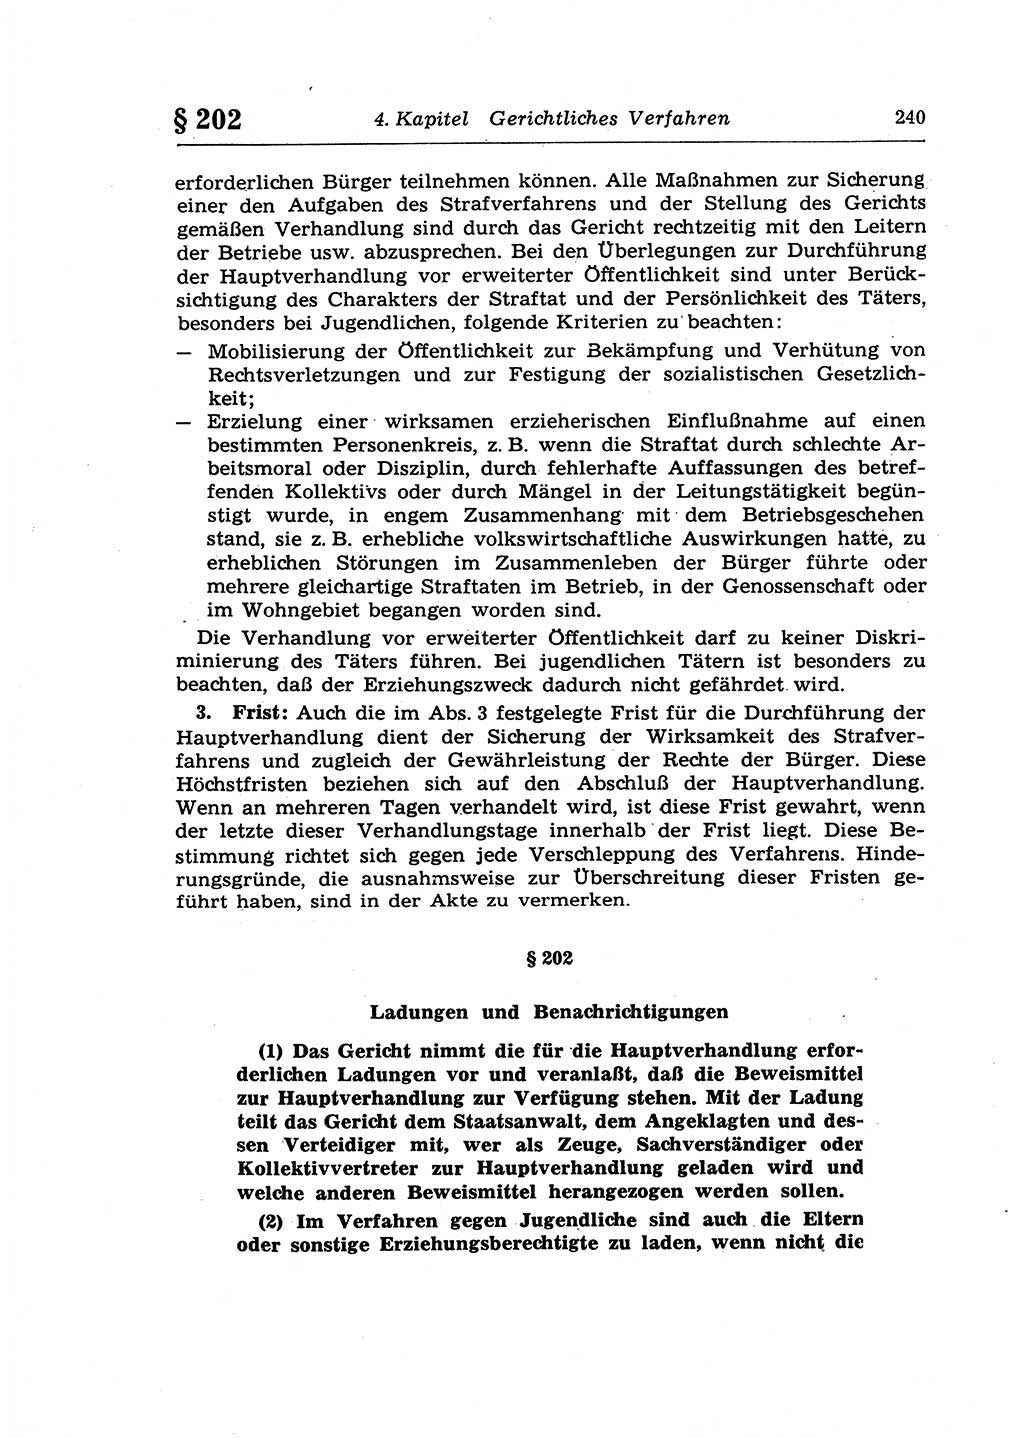 Strafprozeßrecht der DDR (Deutsche Demokratische Republik), Lehrkommentar zur Strafprozeßordnung (StPO) 1968, Seite 240 (Strafprozeßr. DDR Lehrkomm. StPO 19688, S. 240)